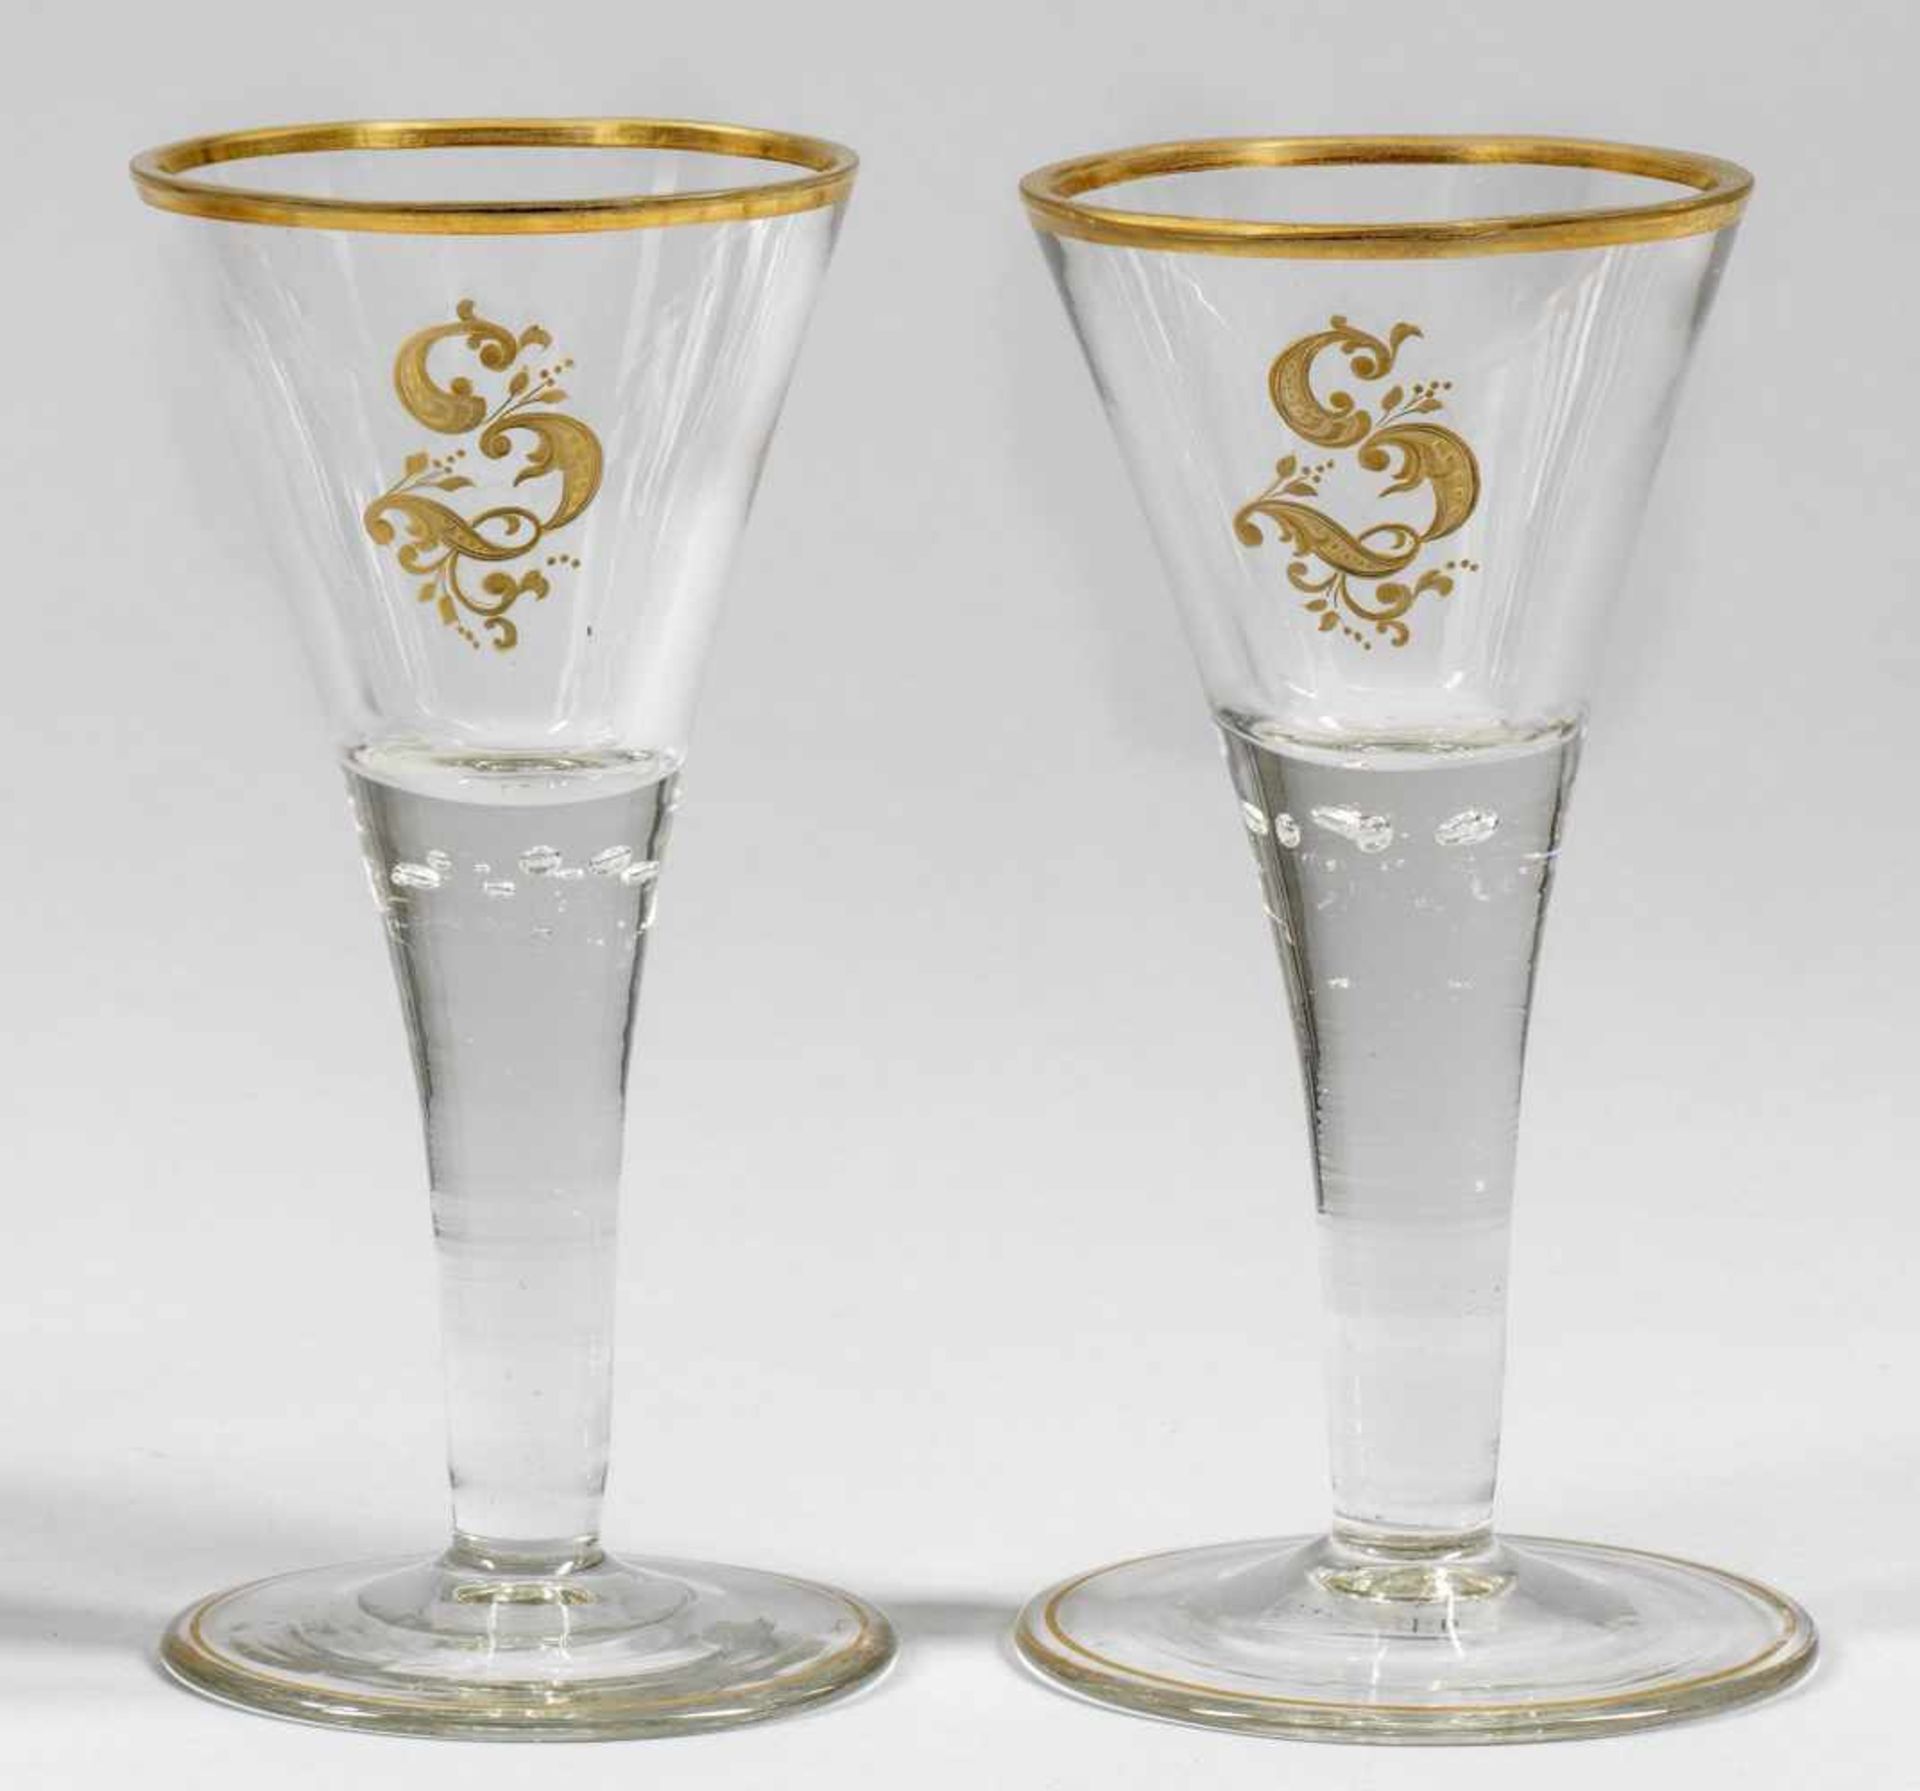 Paar SpitzkelchpokaleFarbloses Glas. In Lauensteiner Form gestaltete Pokale. Flacher Scheibenfuß, im